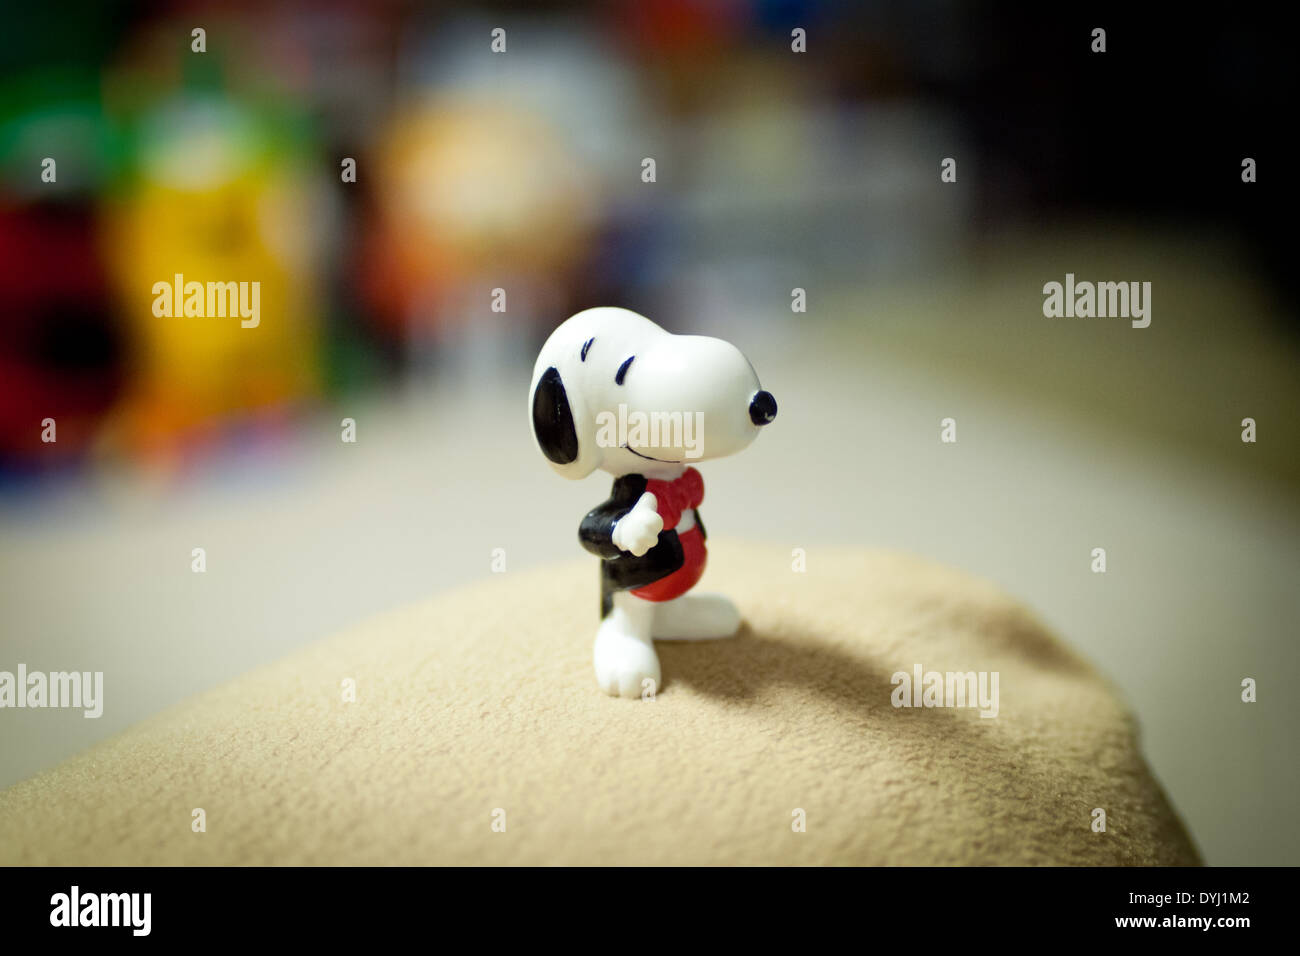 Eine Snoopy Figur aus der McDonald's Happy Meal "Snoopy World Tour" Sammlerstück gesetzt, ca. 1998 / 99. "Argentinien Snoopy" gezeigt. Stockfoto